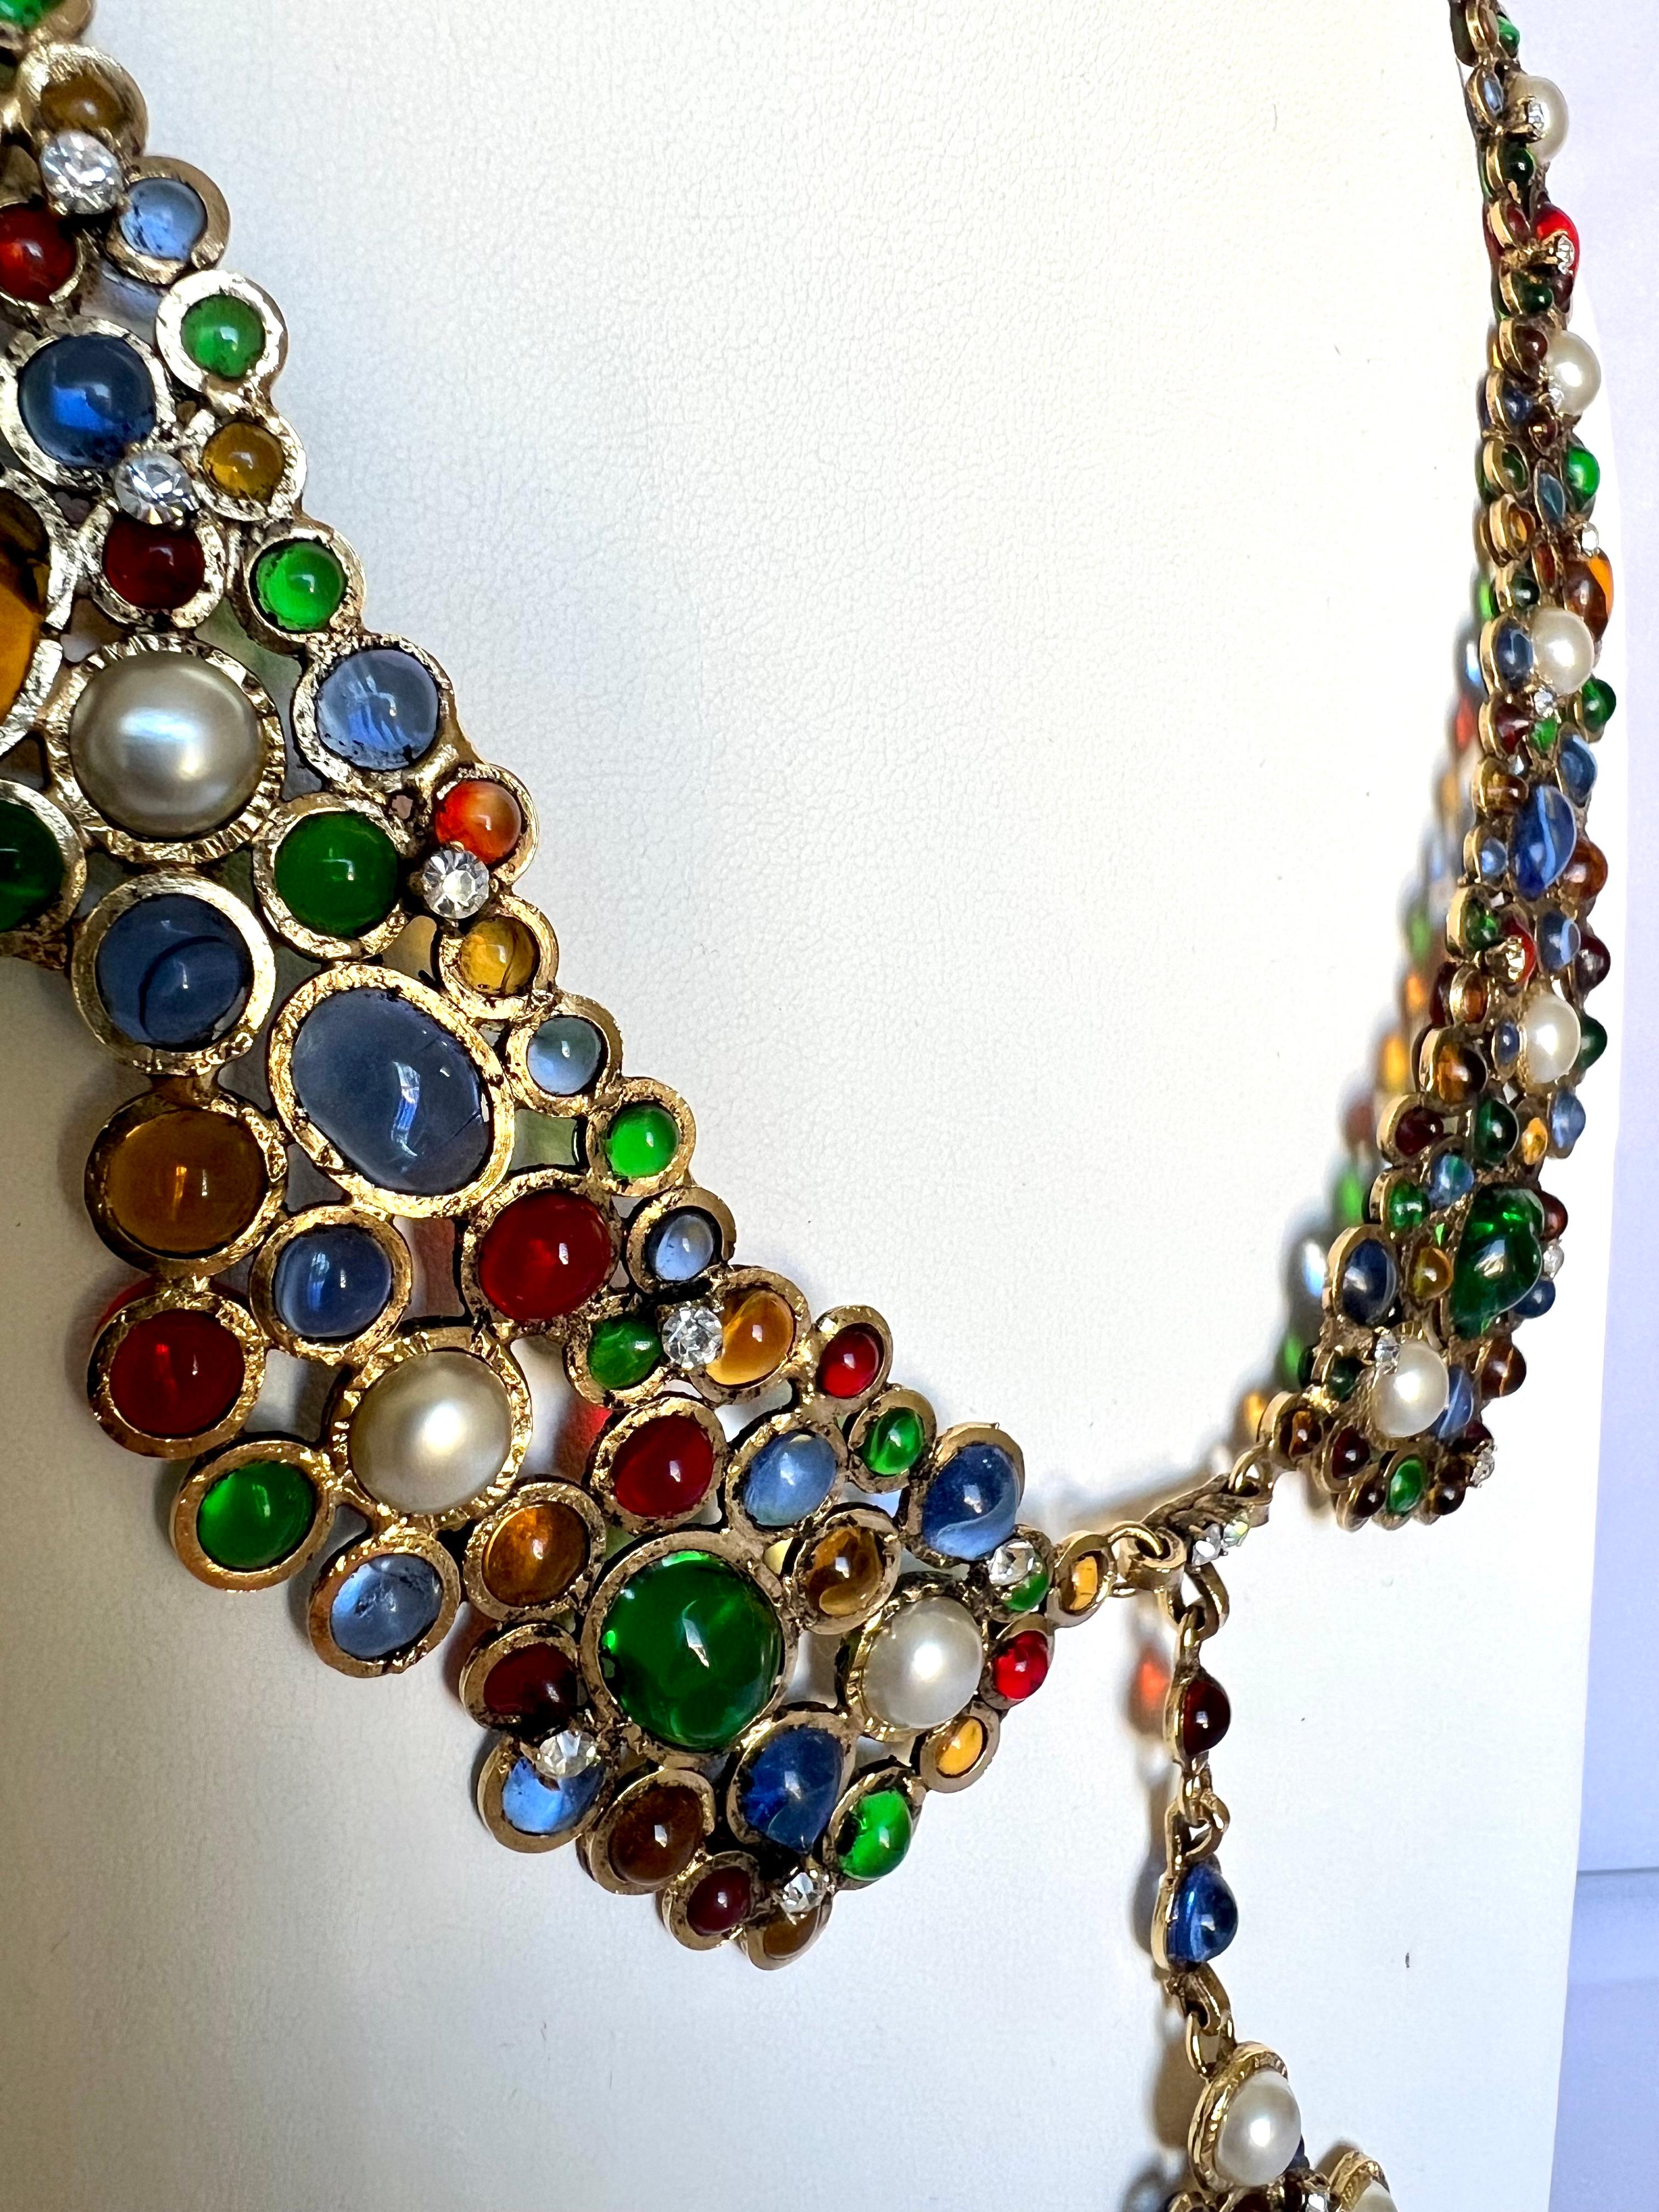 Vintage Chanel Mogul-Halskette mit Anhänger aus Glas und Kunstperlen im Vintage-Stil  (Kunsthandwerker*in)